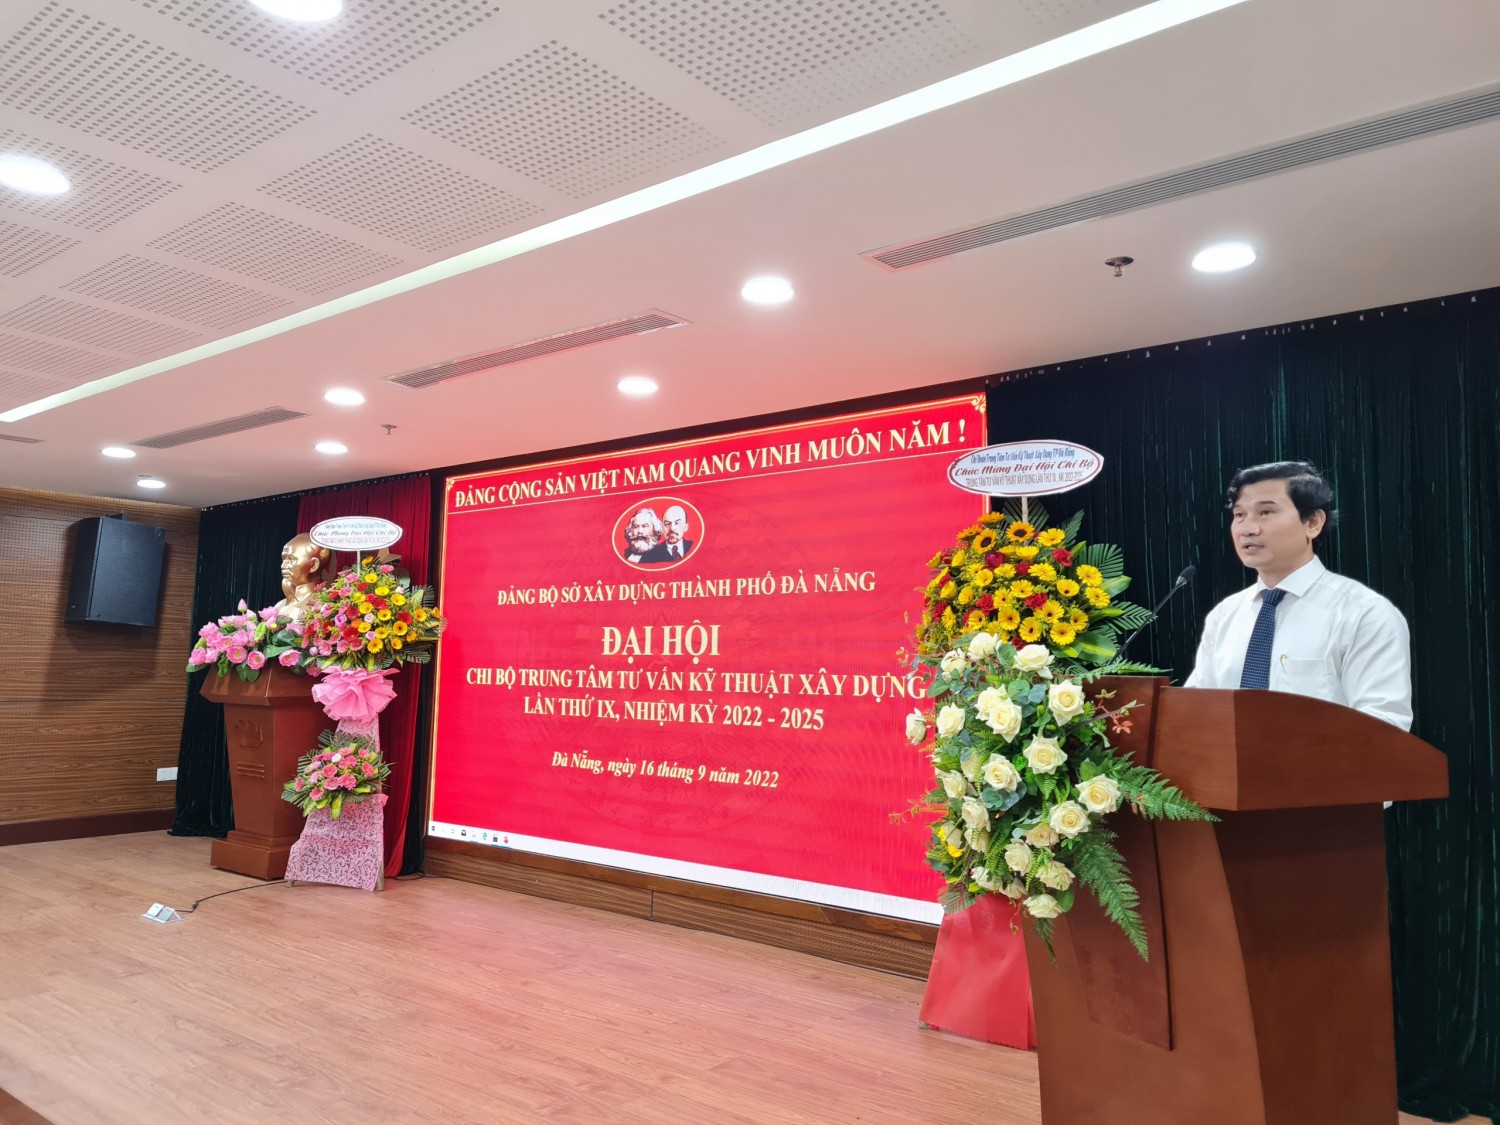 Đồng chí Trần Văn Nam - Bí thư chi bộ, Giám đốc Trung tâm phát biểu tại Đại hội